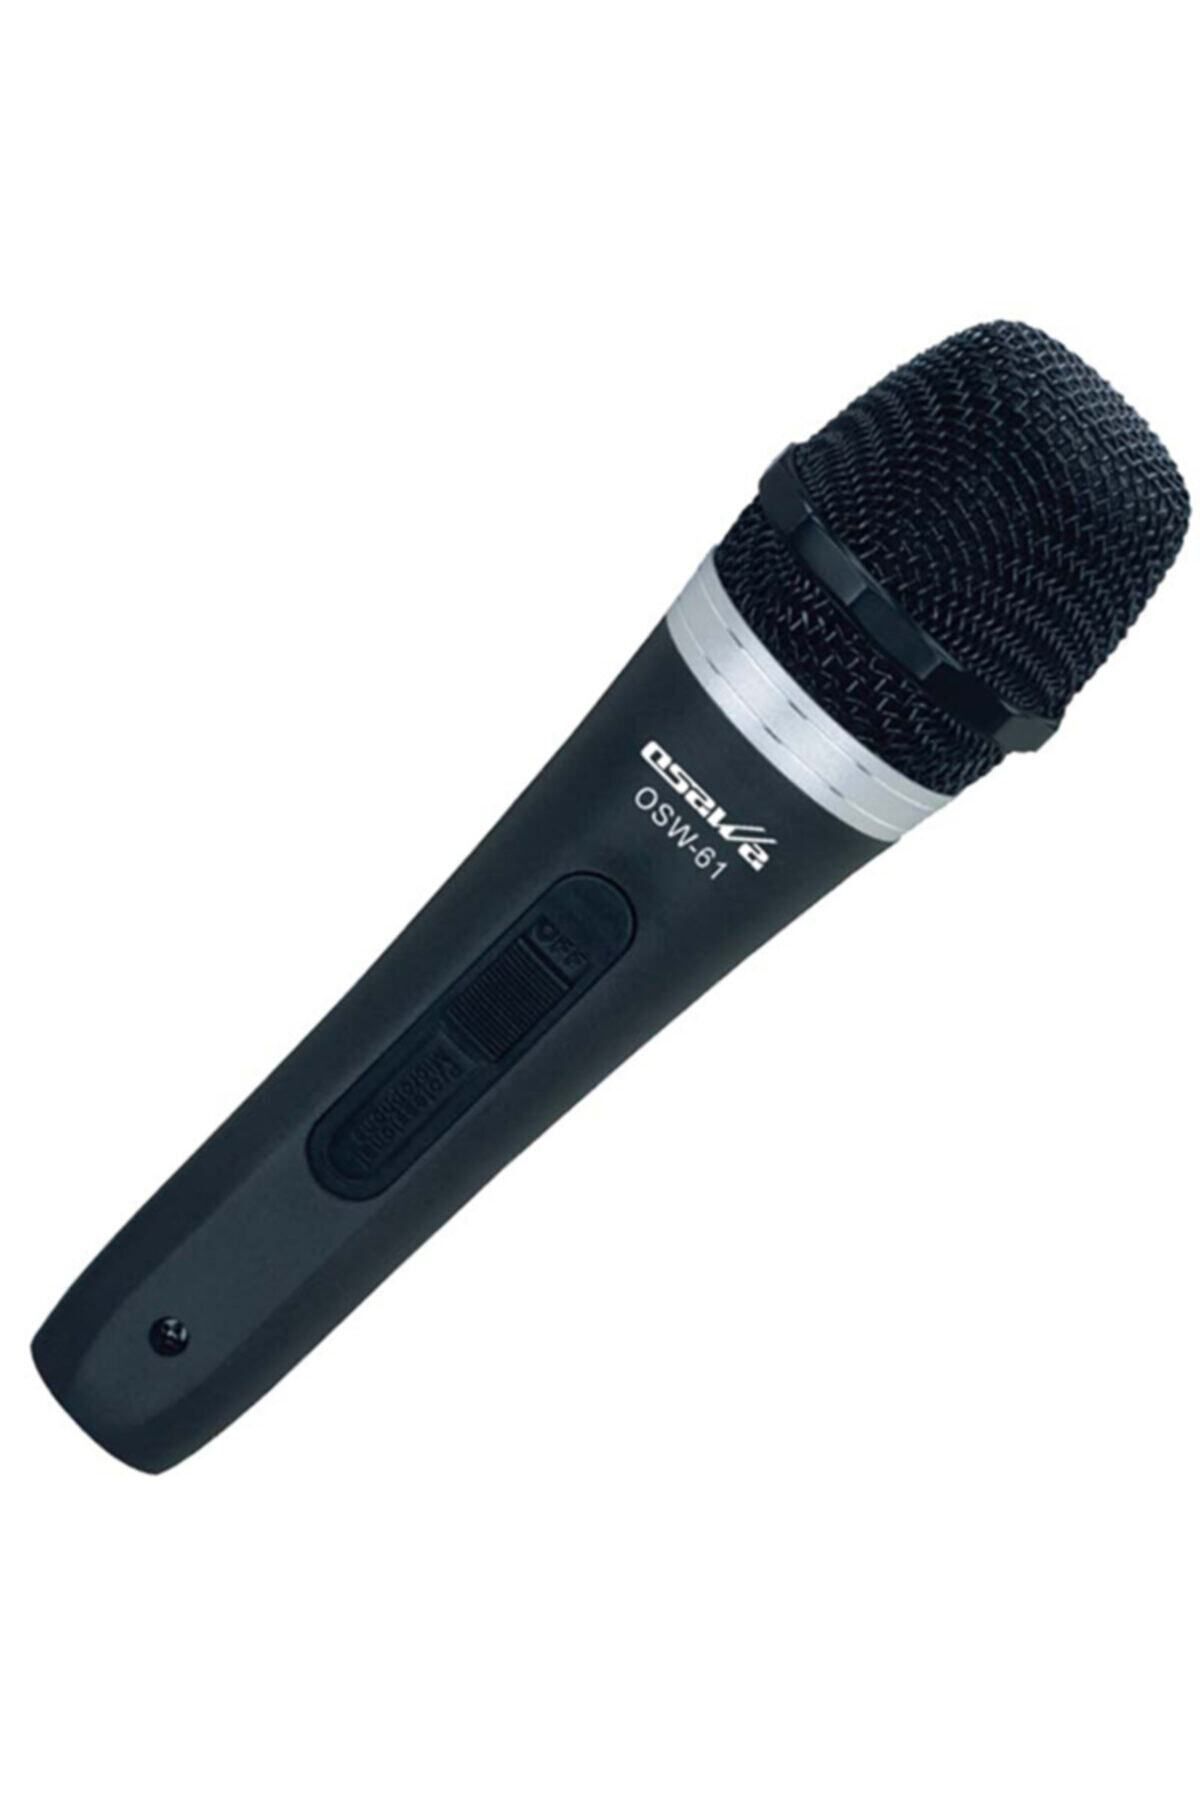 OSAWA Osw-61 600 Ohm Dinamic Kablolu El Mikrofon